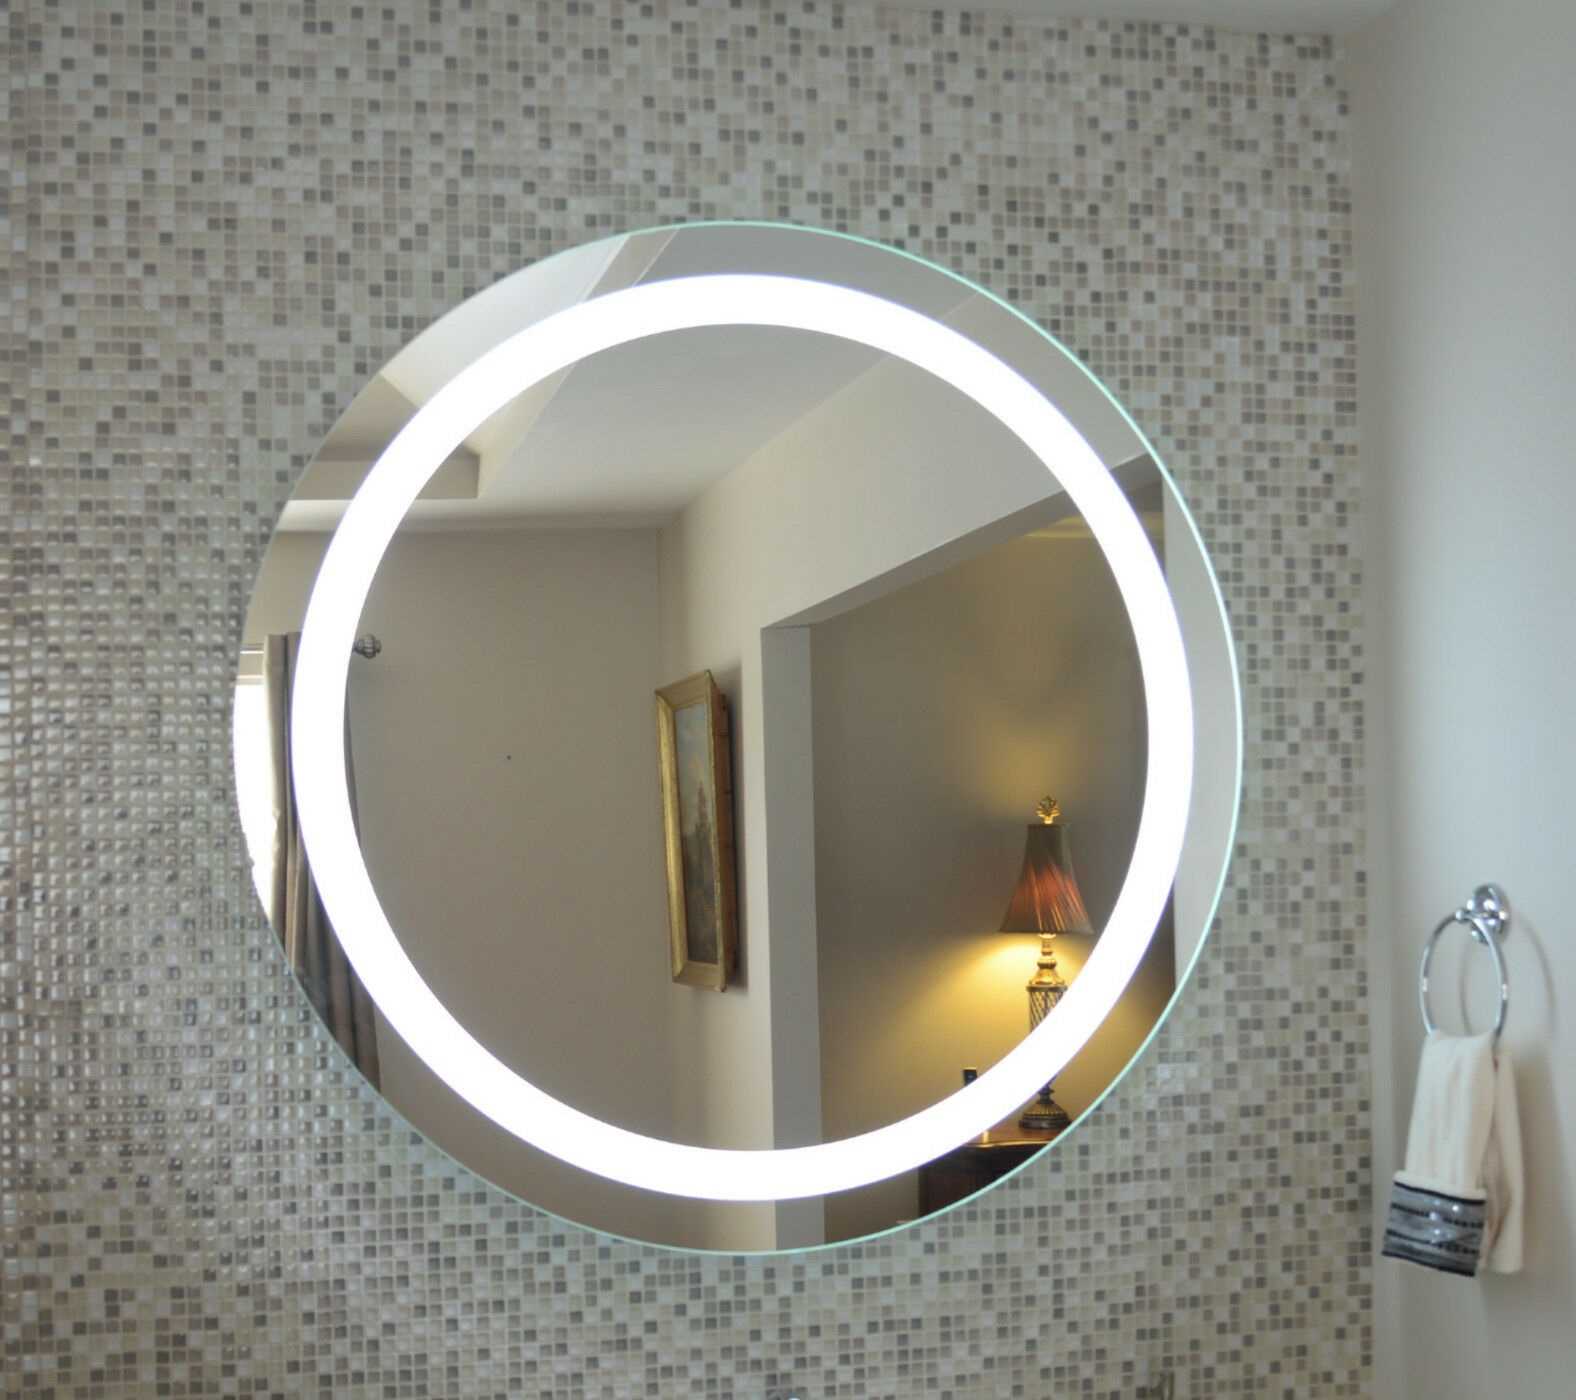 Разновидности зеркал с лампочками, причины популярности у женщин 27 - ДиванеТТо